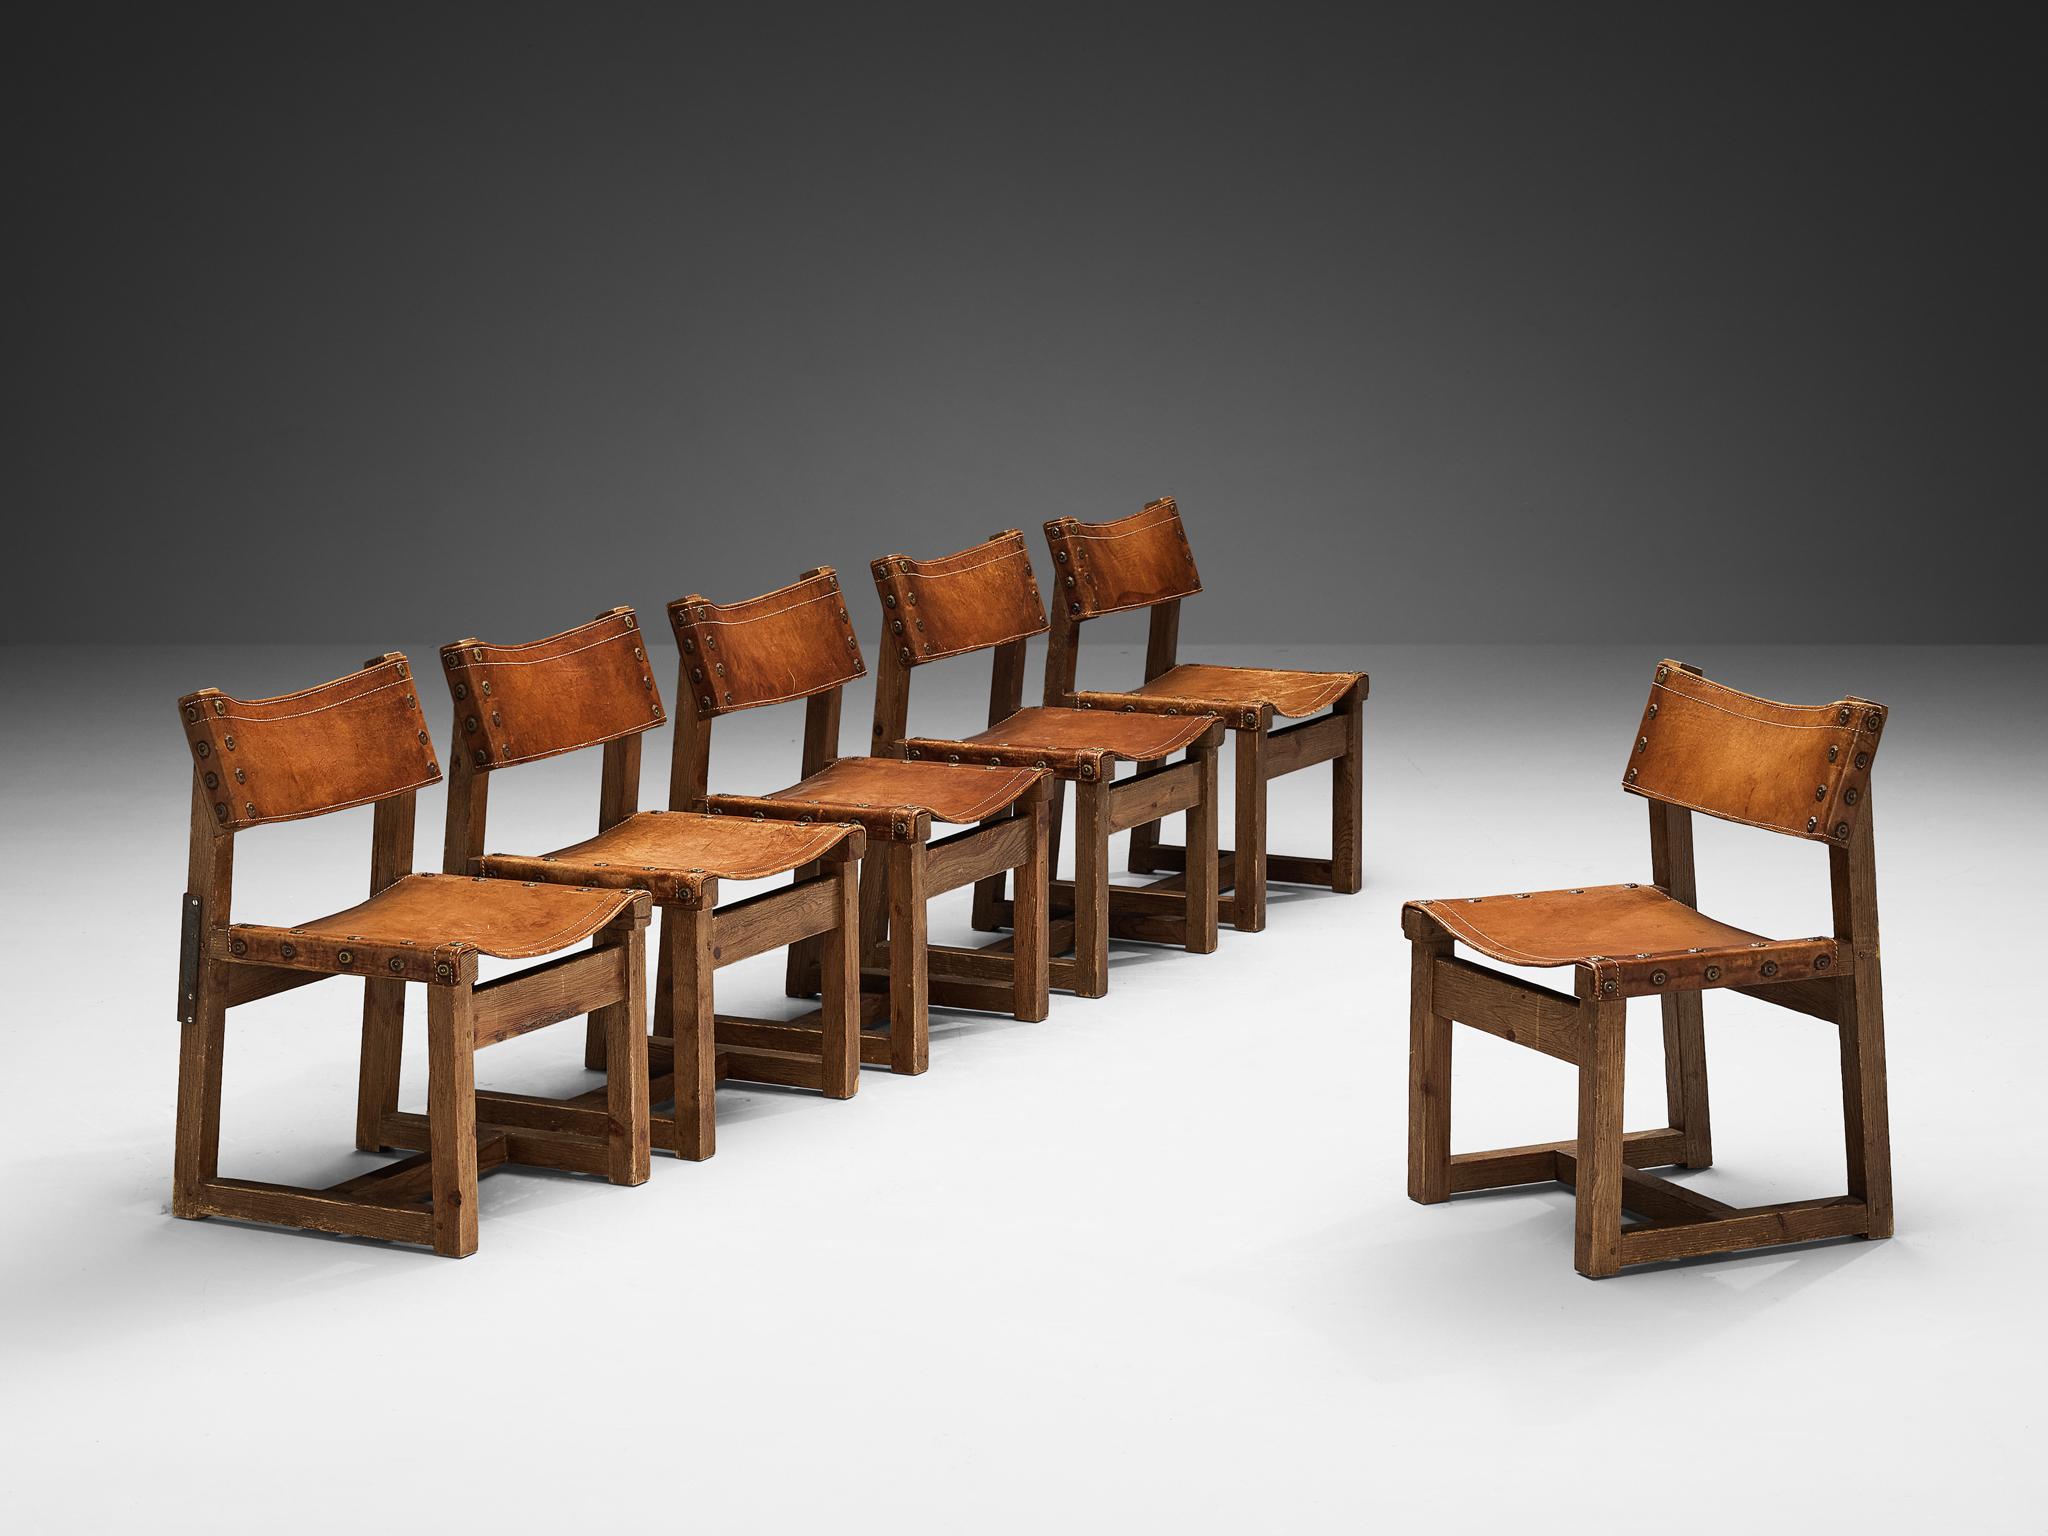 Biosca, Satz von sechs Stühlen, Leder, Eiche, Messing, Spanien, 1960er Jahre 

Robuste Stühle, hergestellt von der spanischen Firma BIOSCA. Diese Stühle sind aus Eichenholz gefertigt und mit cognacfarbenen Ledersitzen ausgestattet. Die Stühle haben